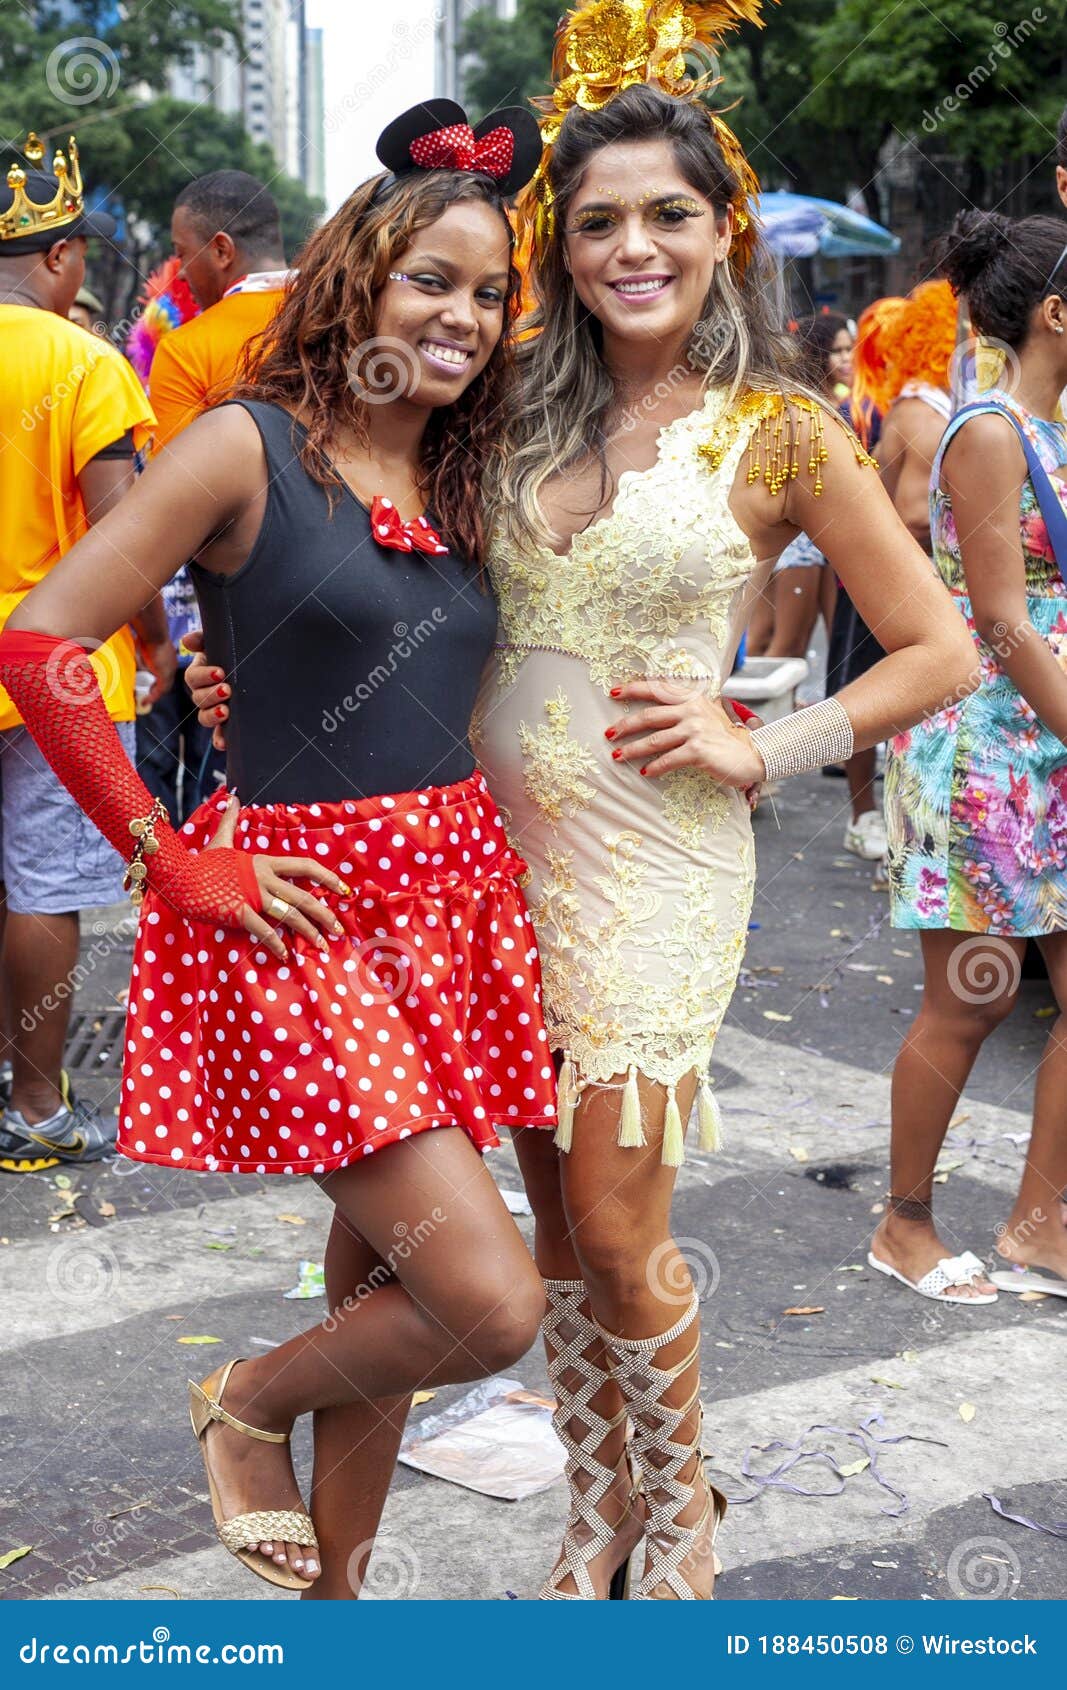 Rio De Janeiro Brazil Mar 03 2014 Carnival Street Party In Rio With Two Women In Festive